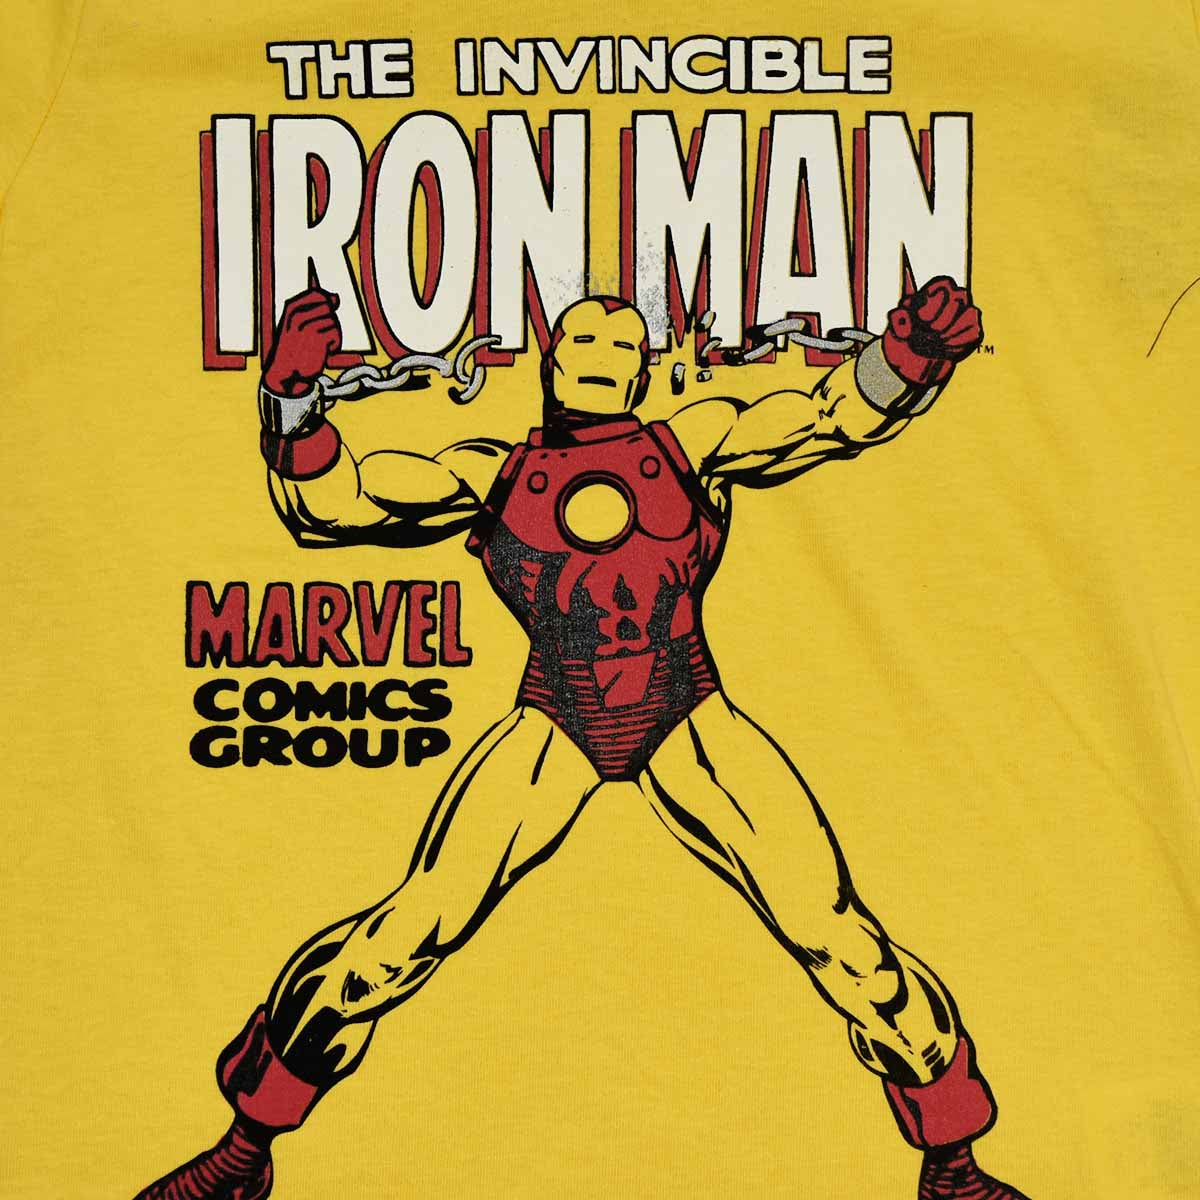 Zapatilla Niño Marvel Casual Iron Man Avengers Super Héroe